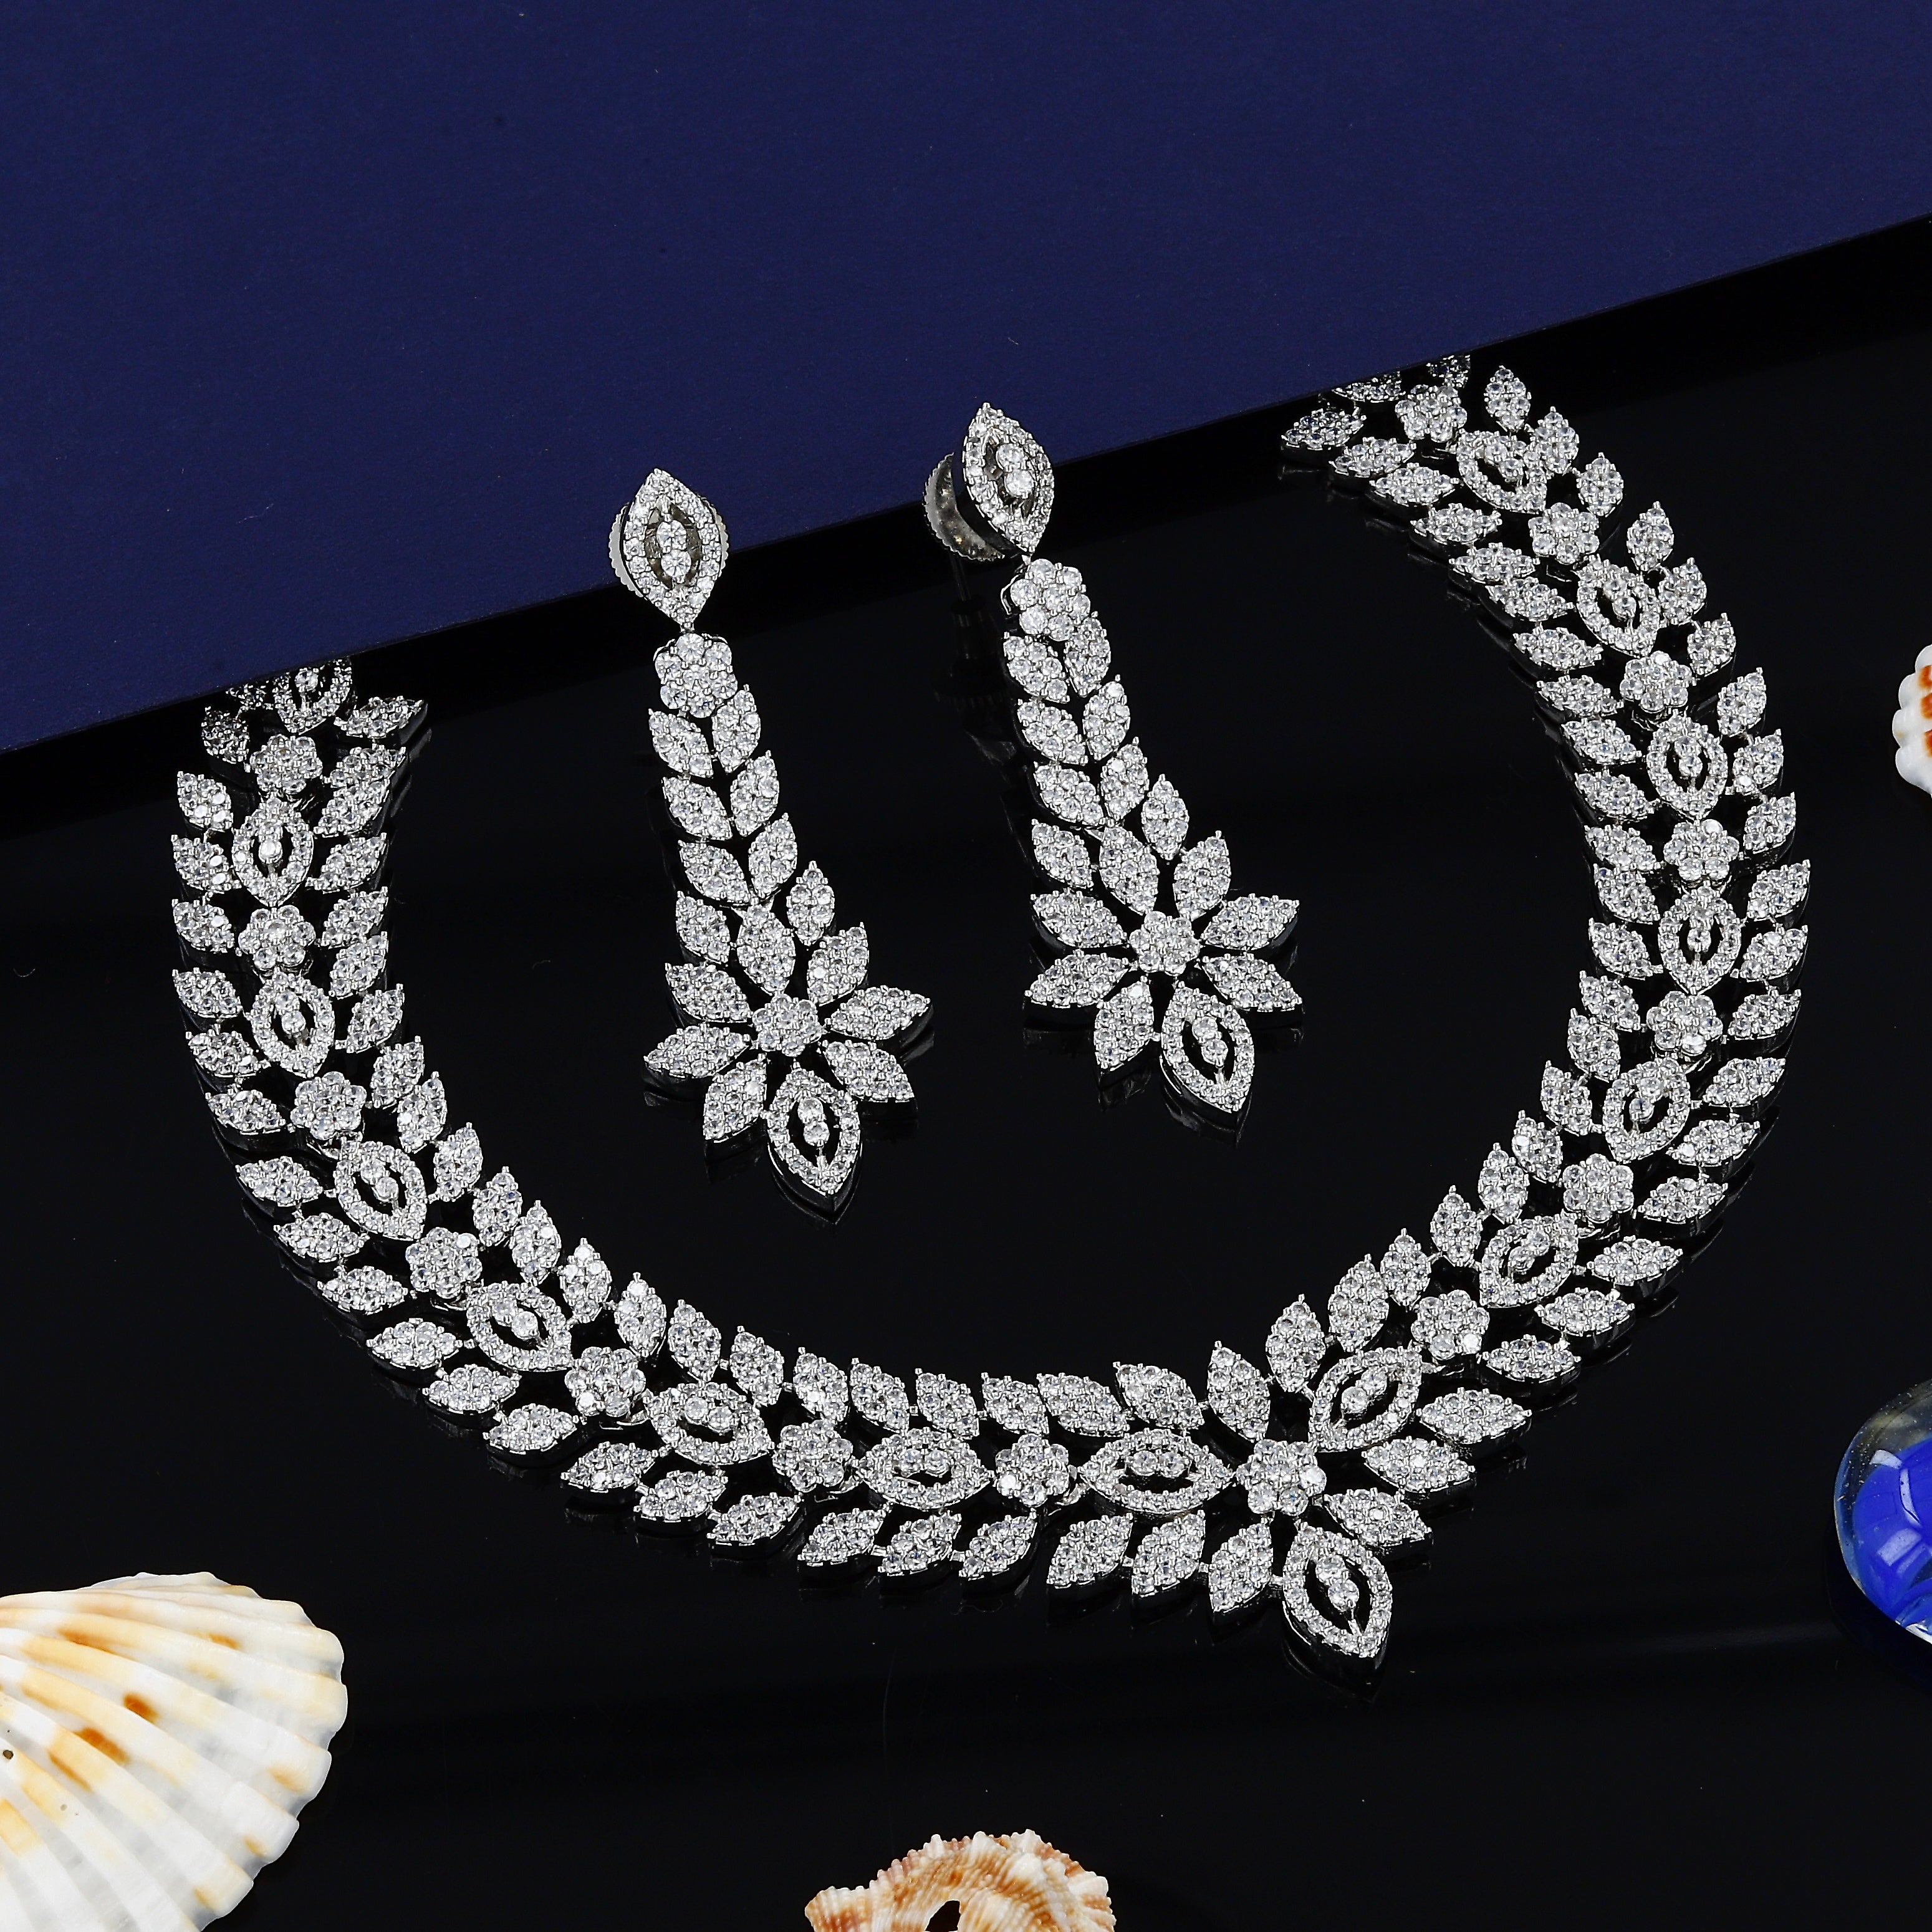 Merquise Design Mini Diamond Necklace